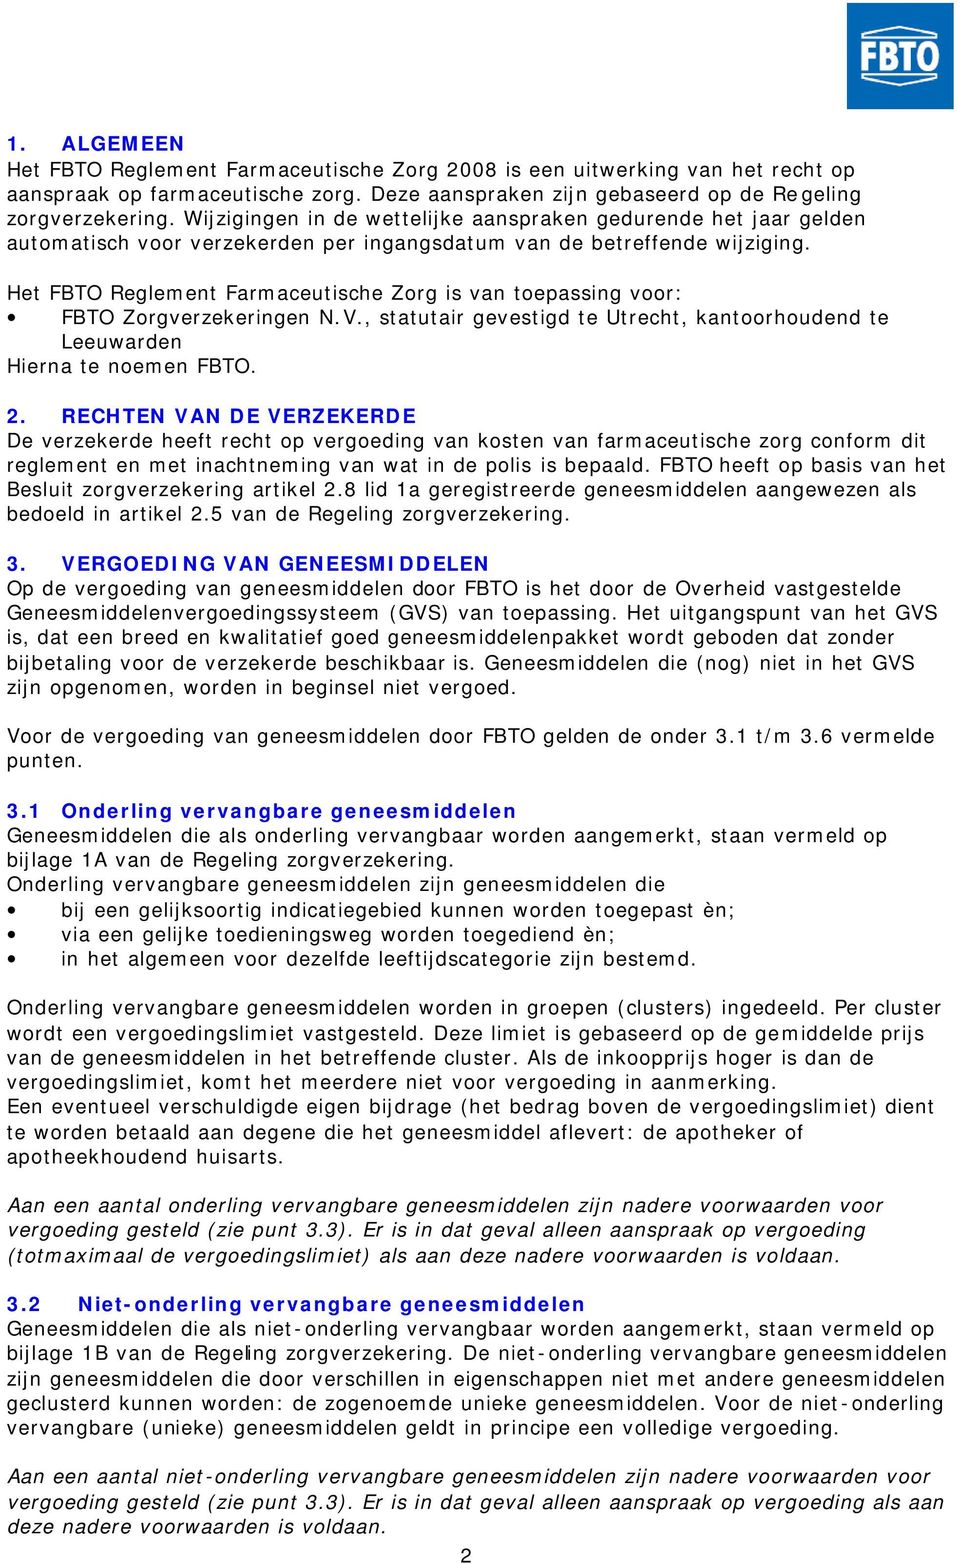 Het FBTO Reglement Farmaceutische Zorg is van toepassing voor: FBTO Zorgverzekeringen N.V., statutair gevestigd te Utrecht, kantoorhoudend te Leeuwarden Hierna te noemen FBTO. 2.